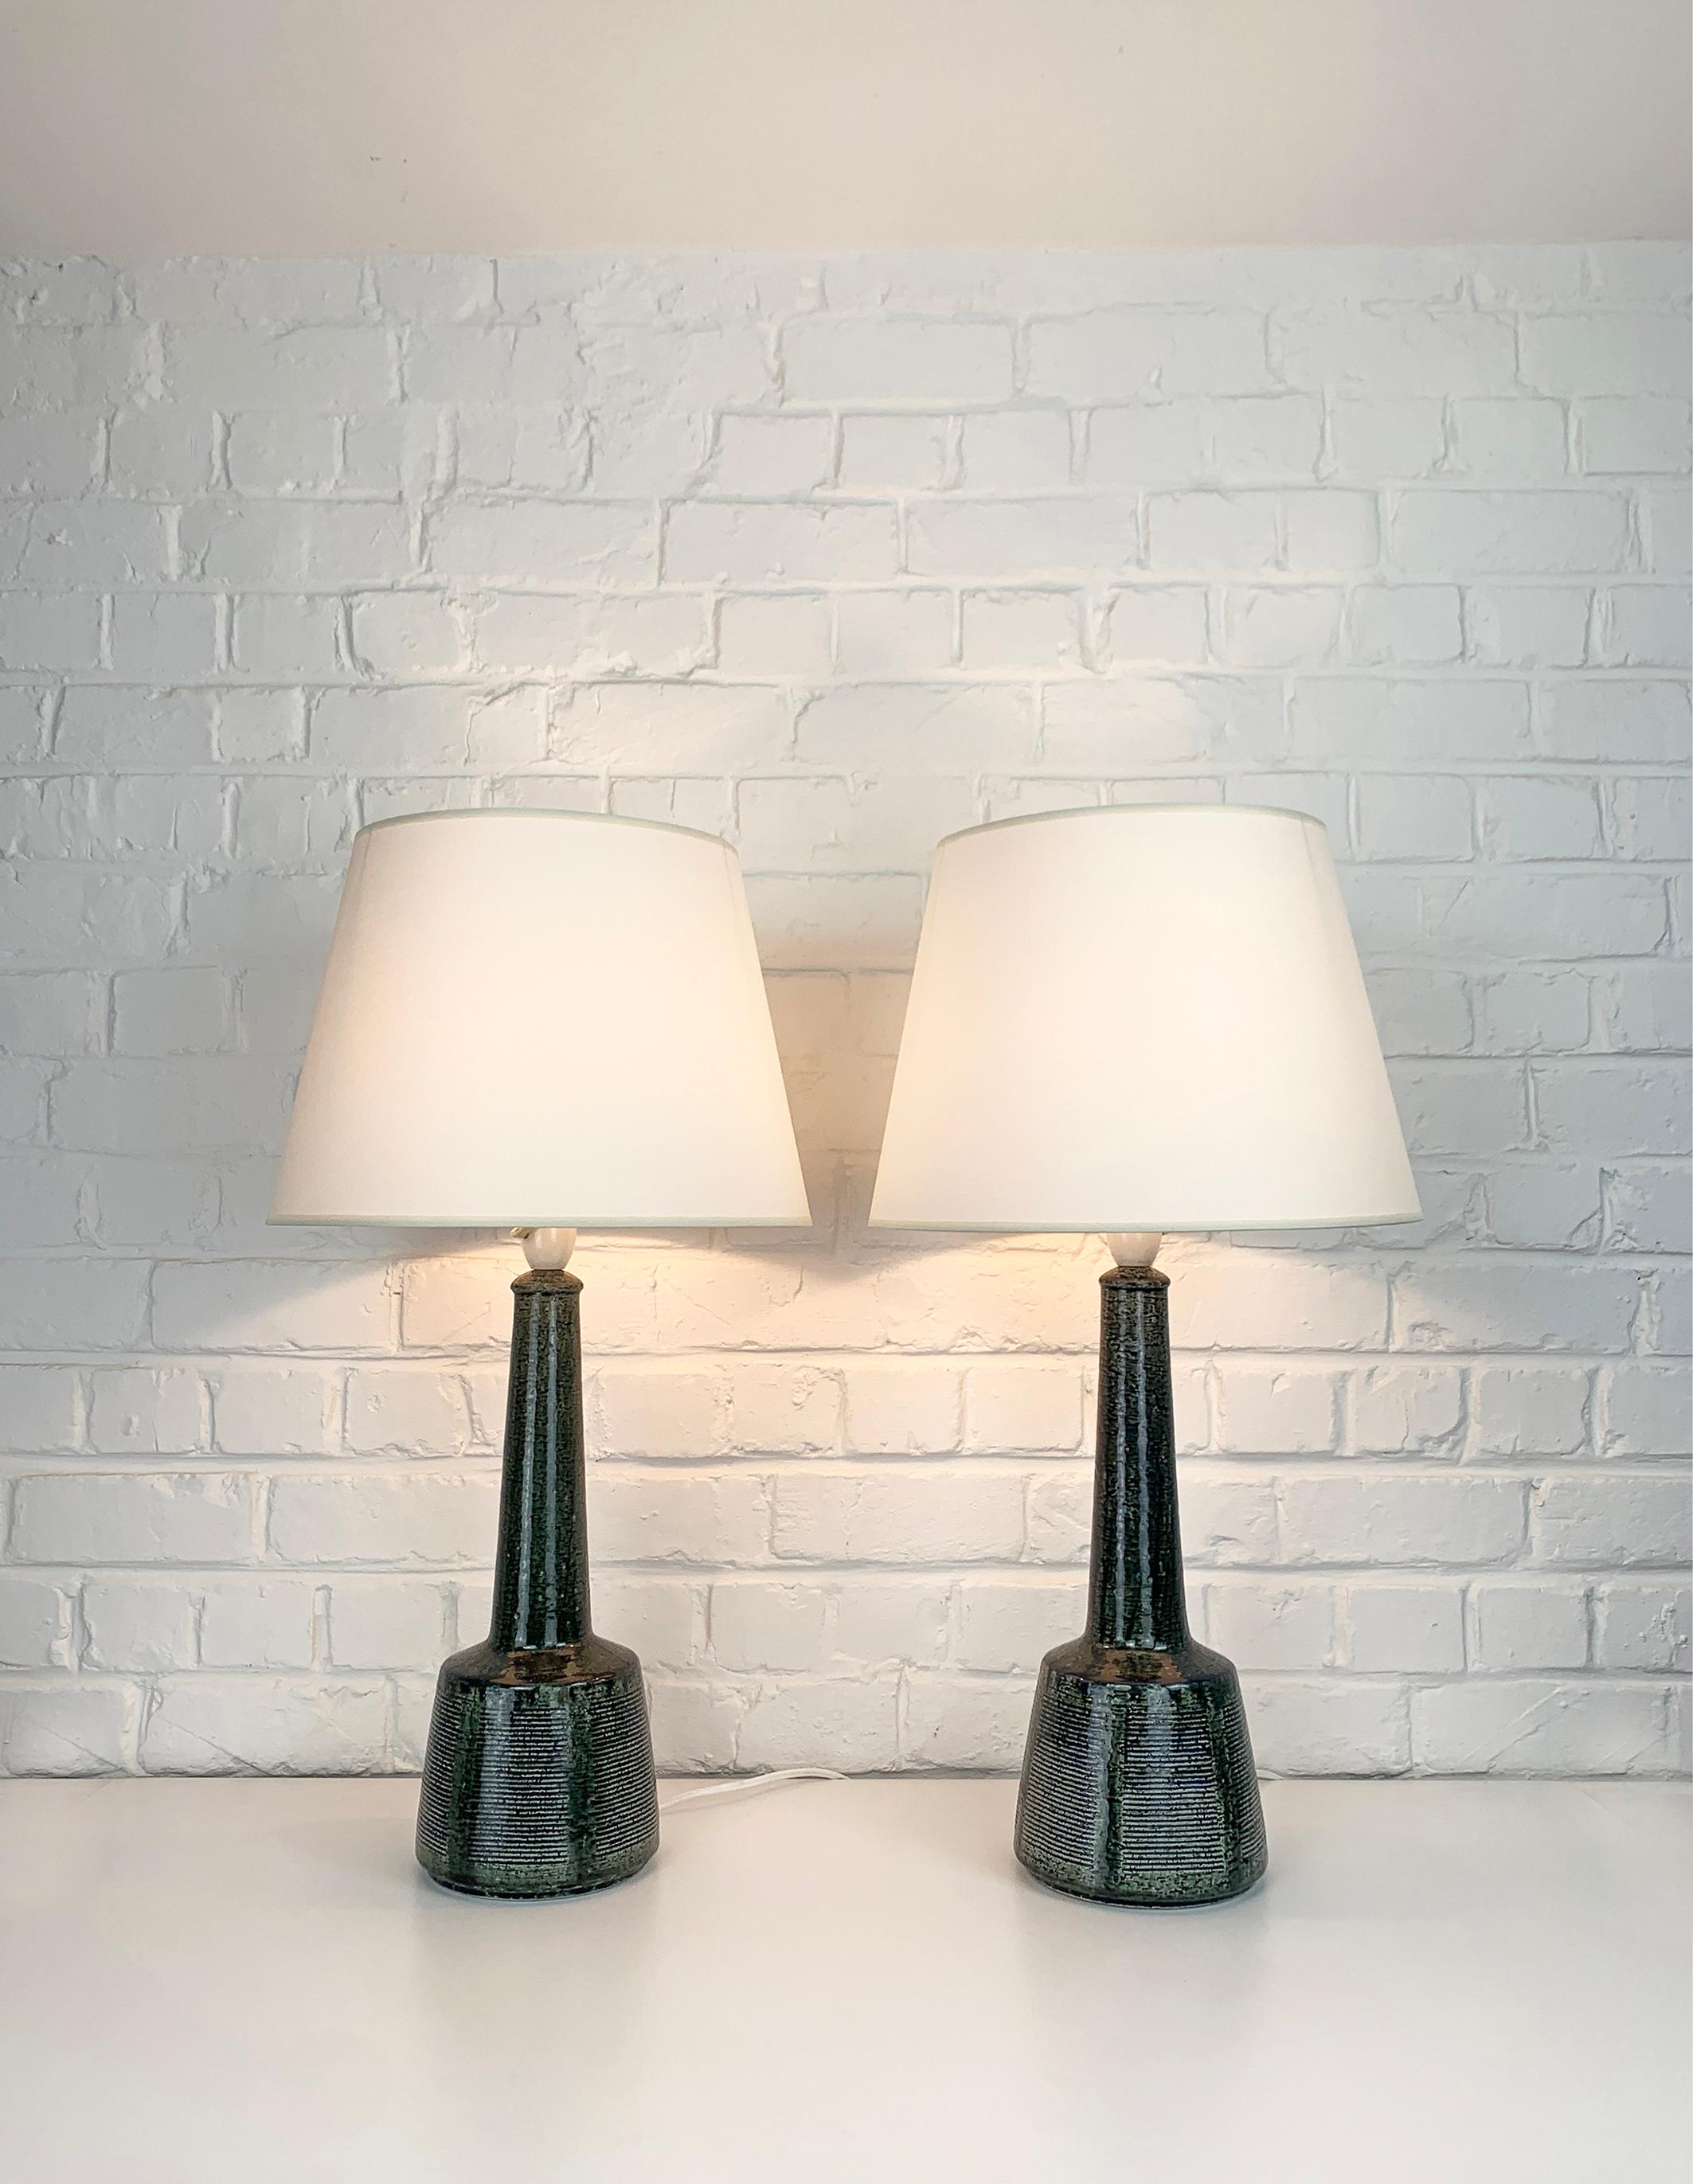 Ces lampes ont été conçues par Esben Klint, fils de Kaare Klint (le célèbre designer de meubles danois). Esben a créé un design intemporel avec ce modèle, il a un côté contemporain et graphique malgré ses plus de 50 ans.

Ces lampes ont été